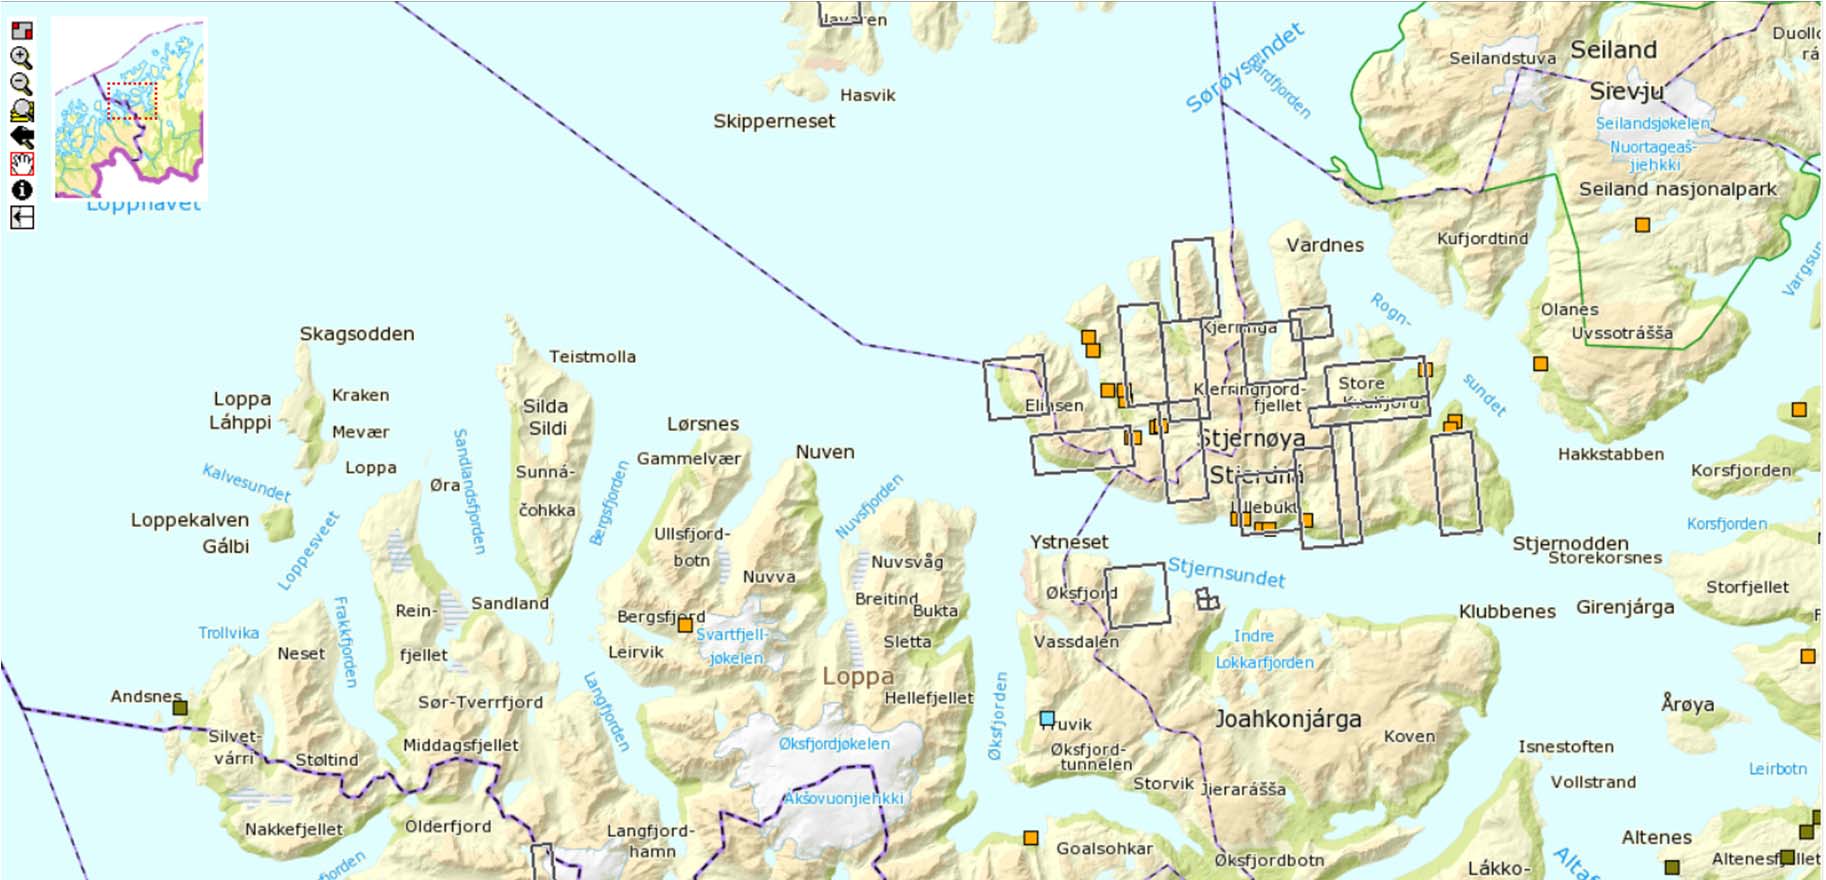 Nordic Minings leterettigheter 2013 Stjernøya Claims